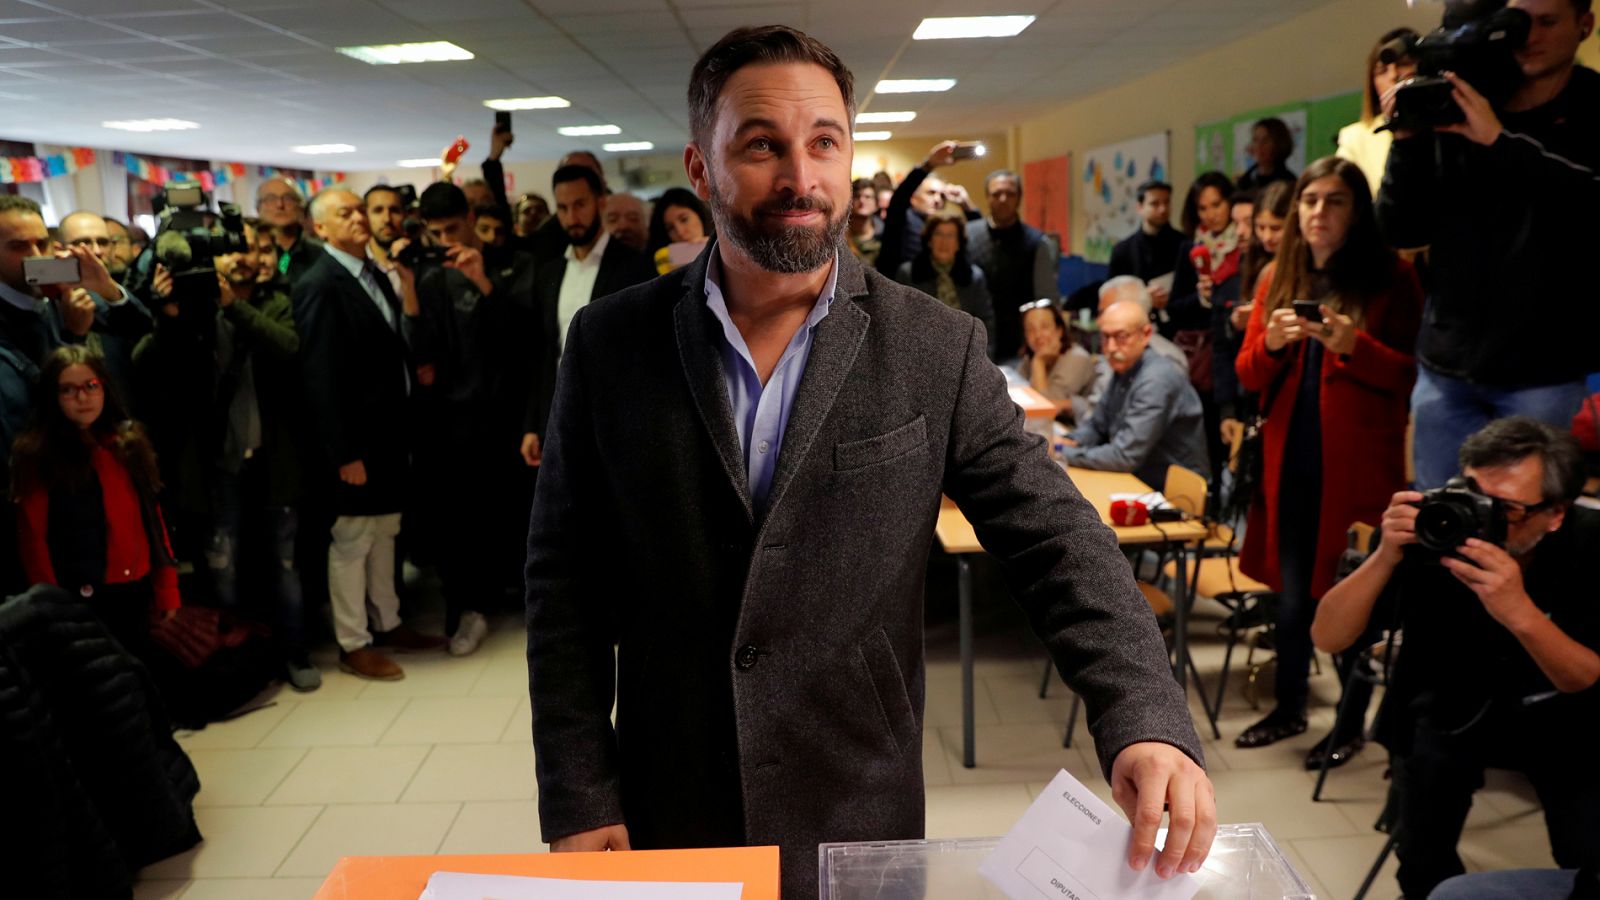 Elecciones generales: Abascal deposita su voto - RTVE.es